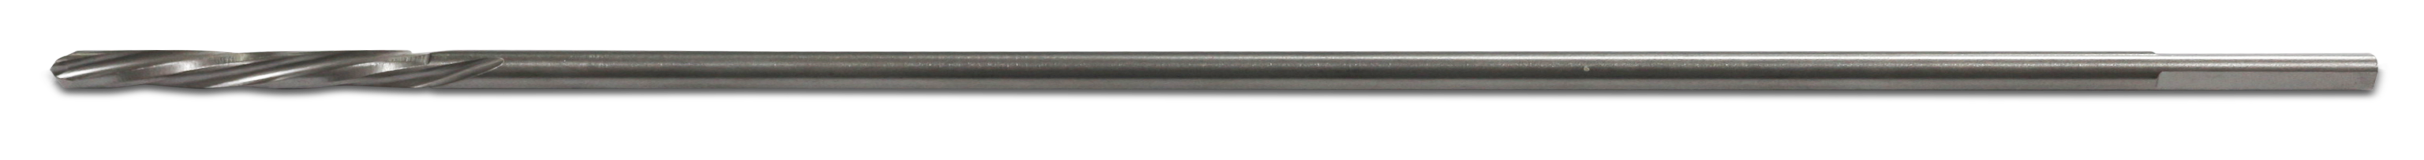 Drill Bit Î¦4.0x250mm Stopper for Drill Bit